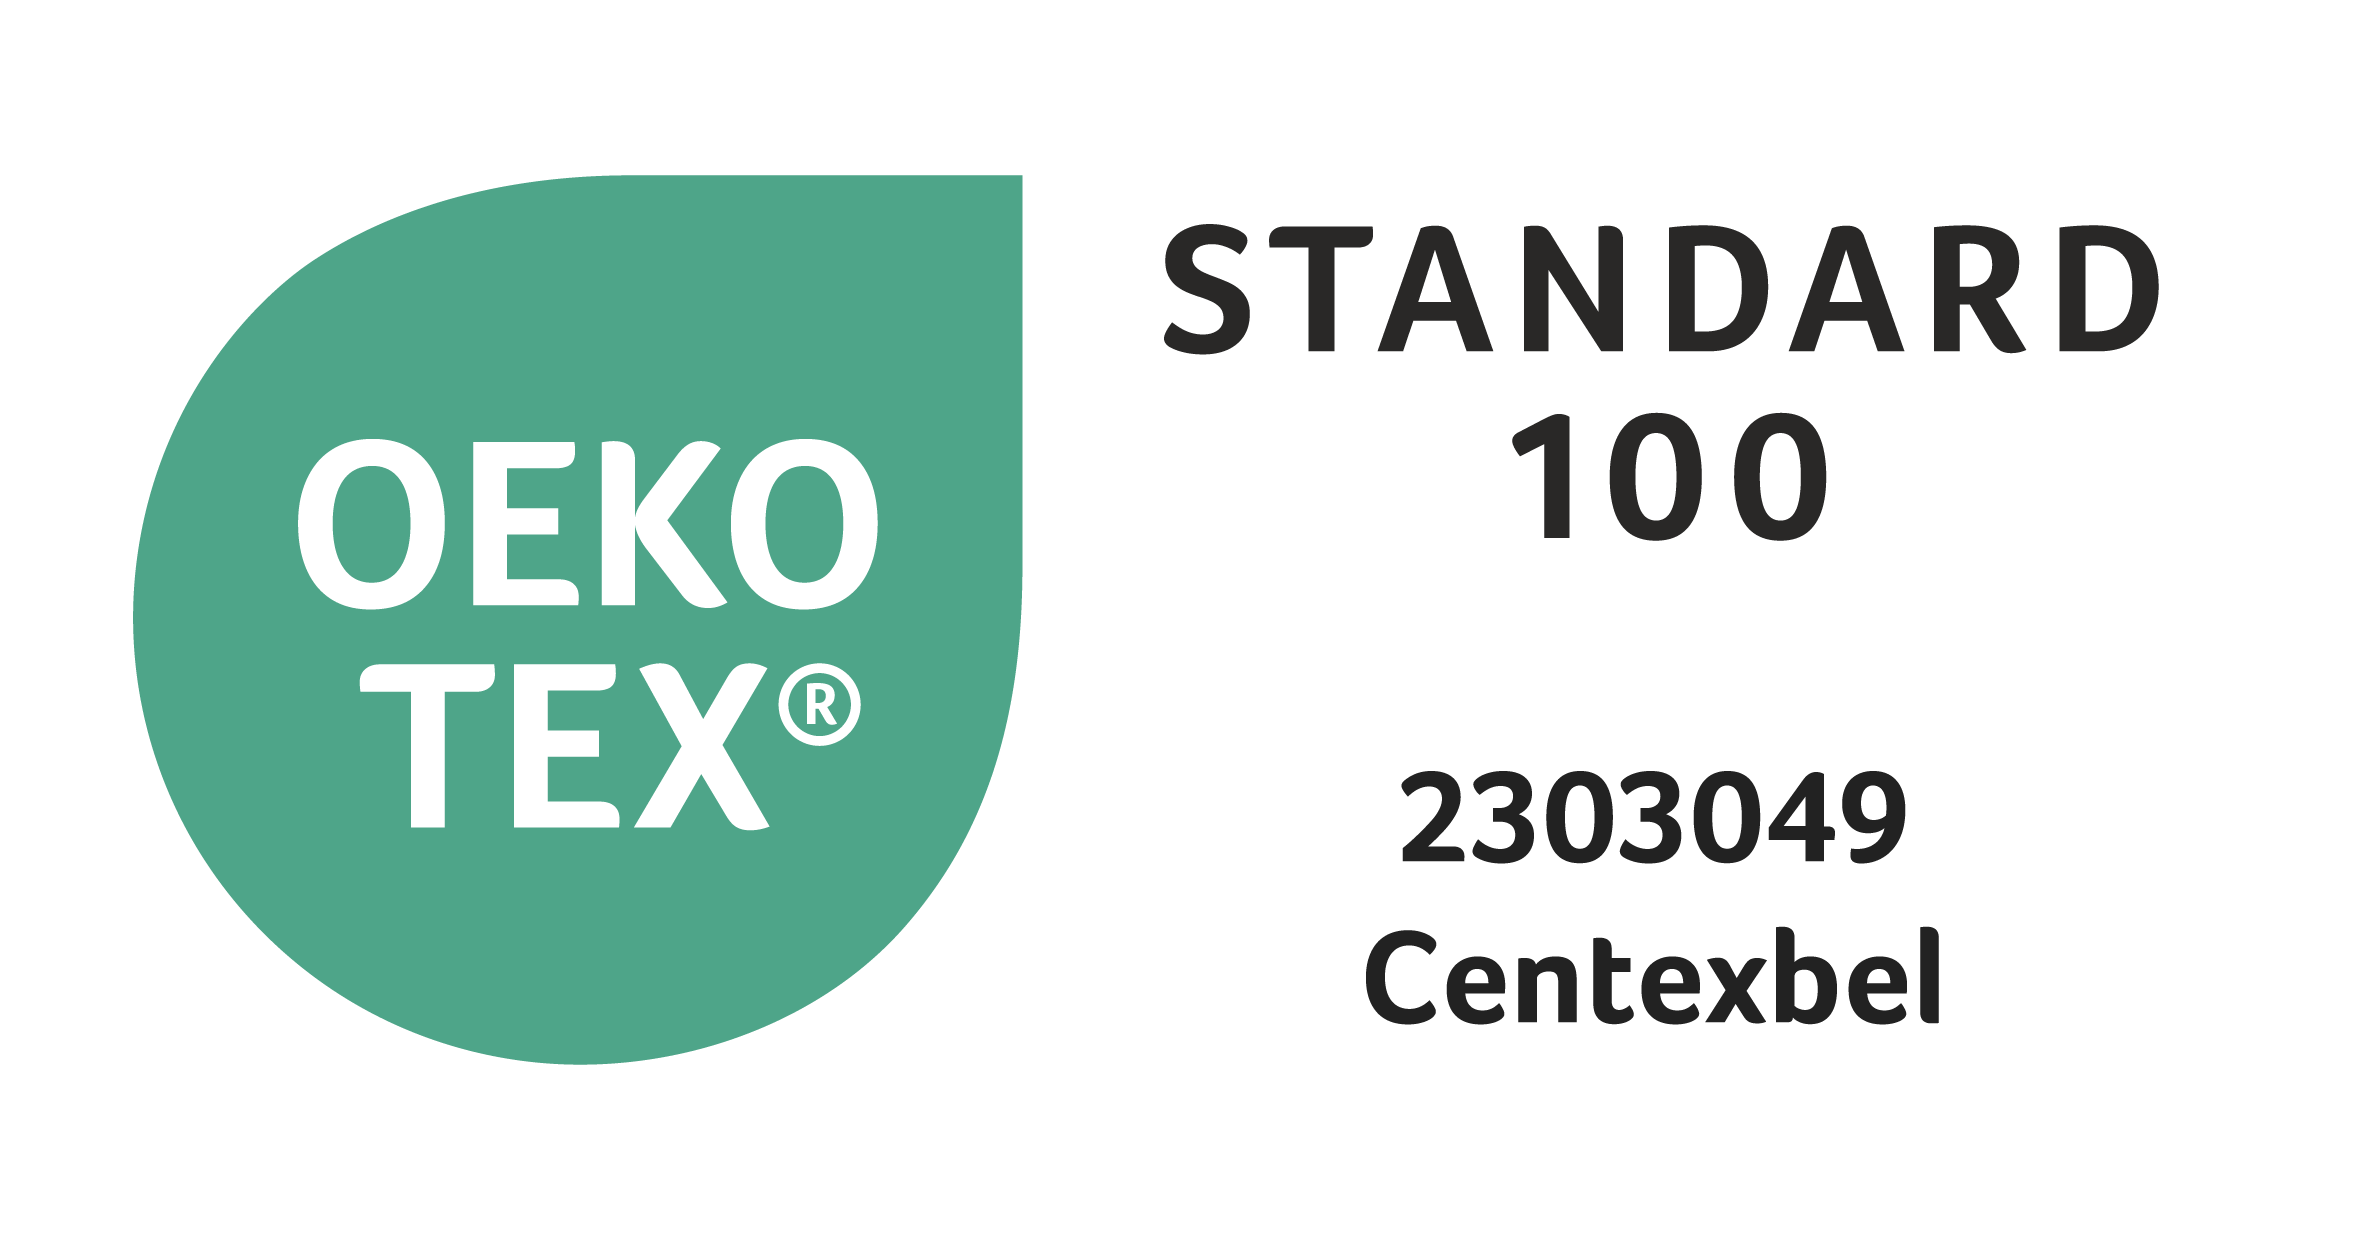 Testé substances nocives d après Oeko-Tex® Standard 100 (2303049/Centexbel)